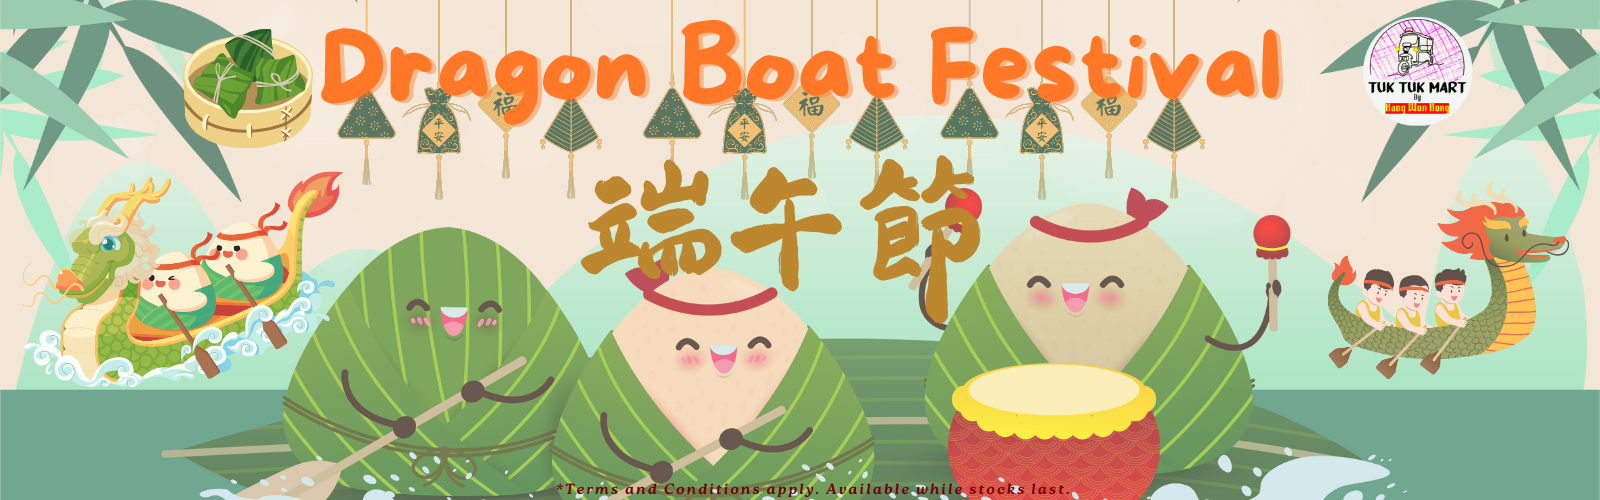 Dragon Boat Festival at Tuk Tuk Mart - Uk's best online Asian supermarket.